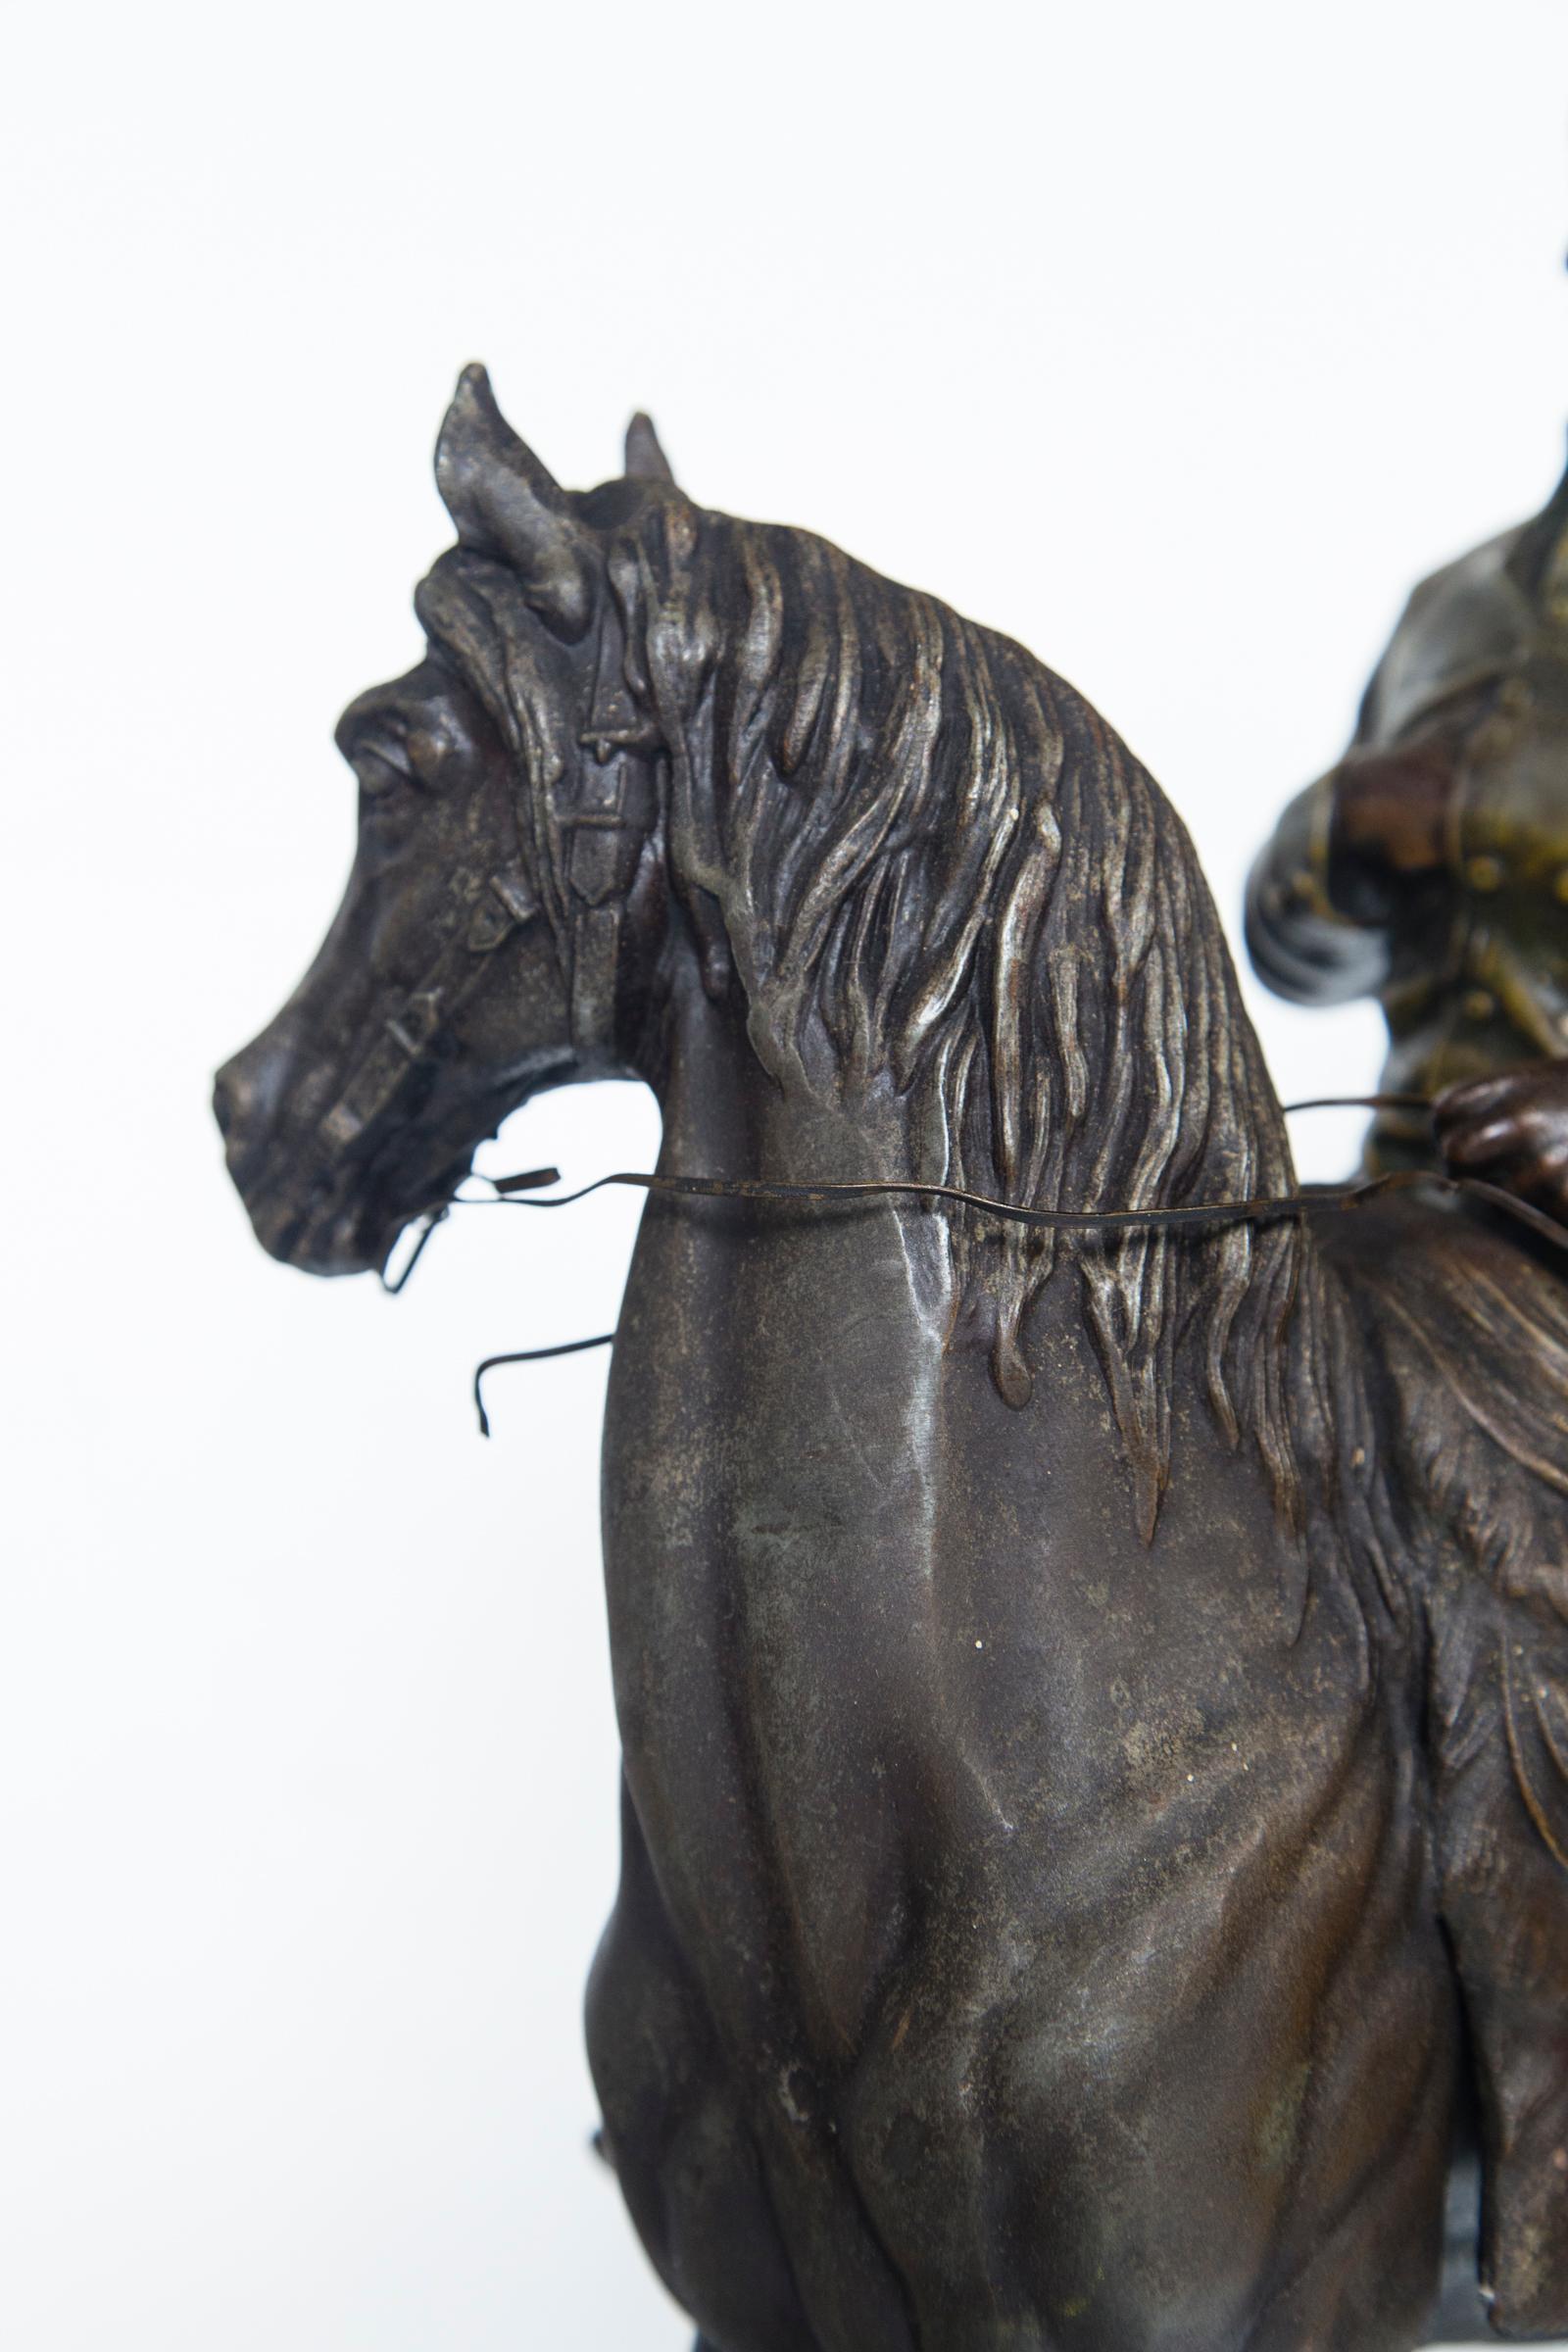 Spelter White Metal Napoleon on Horseback